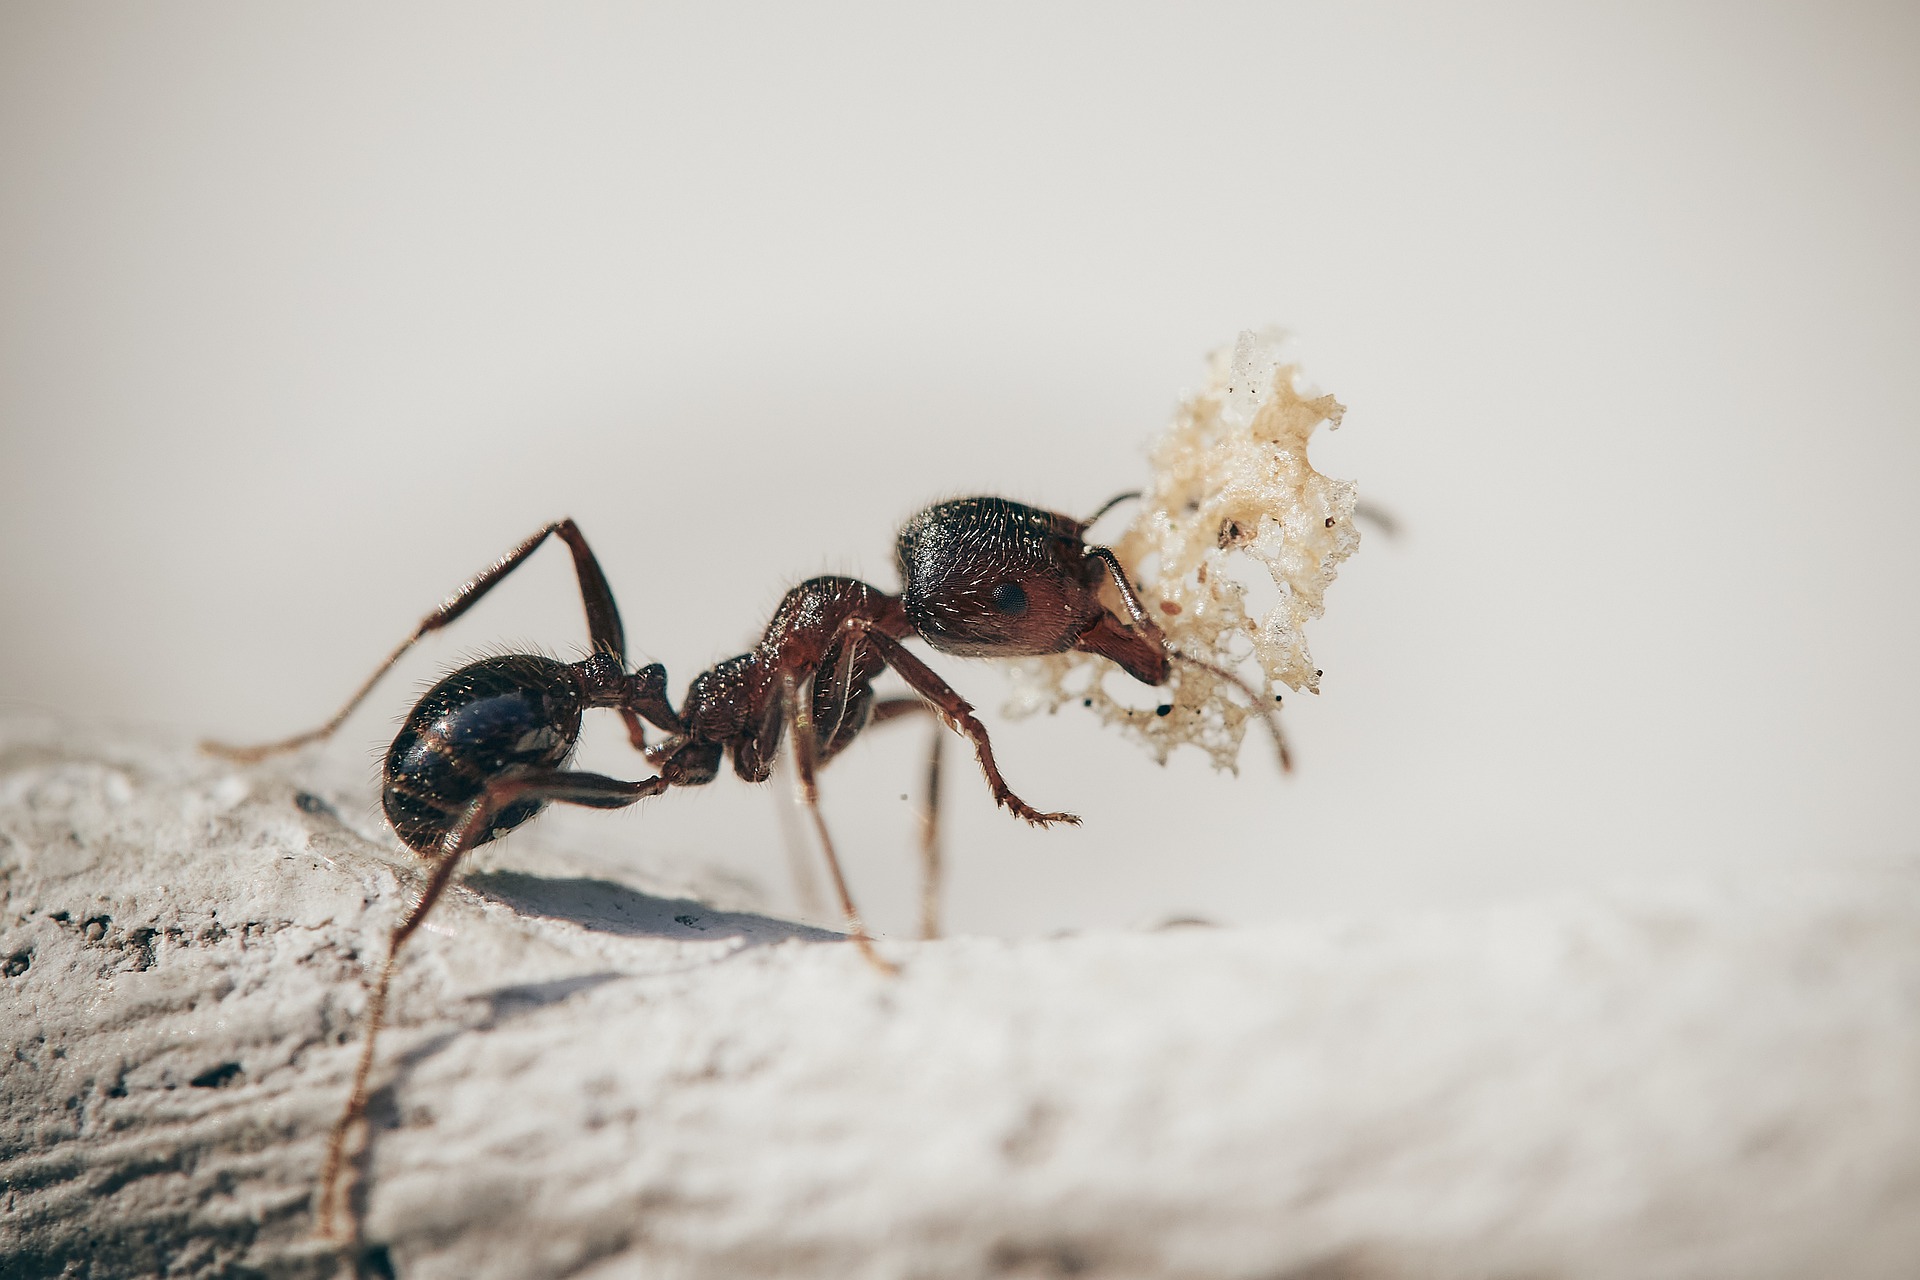 Utvrdite je li mrav kralježnjak ili beskralješnjak